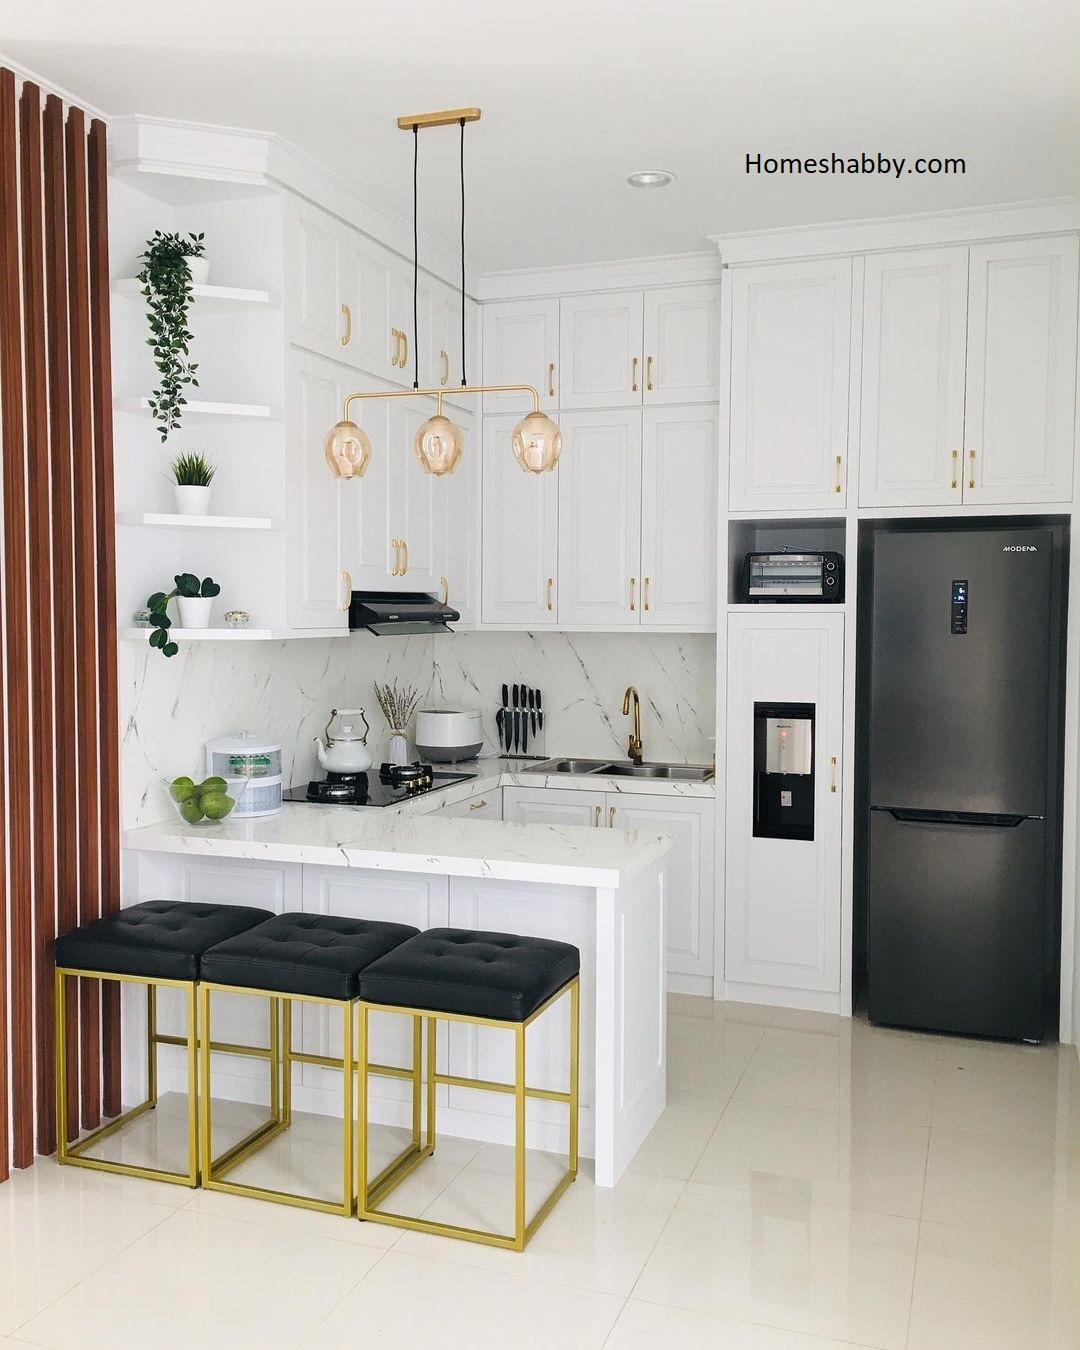 Kumpulan Desain Terbaru Ukuran Dapur Ideal Untuk Rumah Minimalis Homeshabbycom Design Home Plans